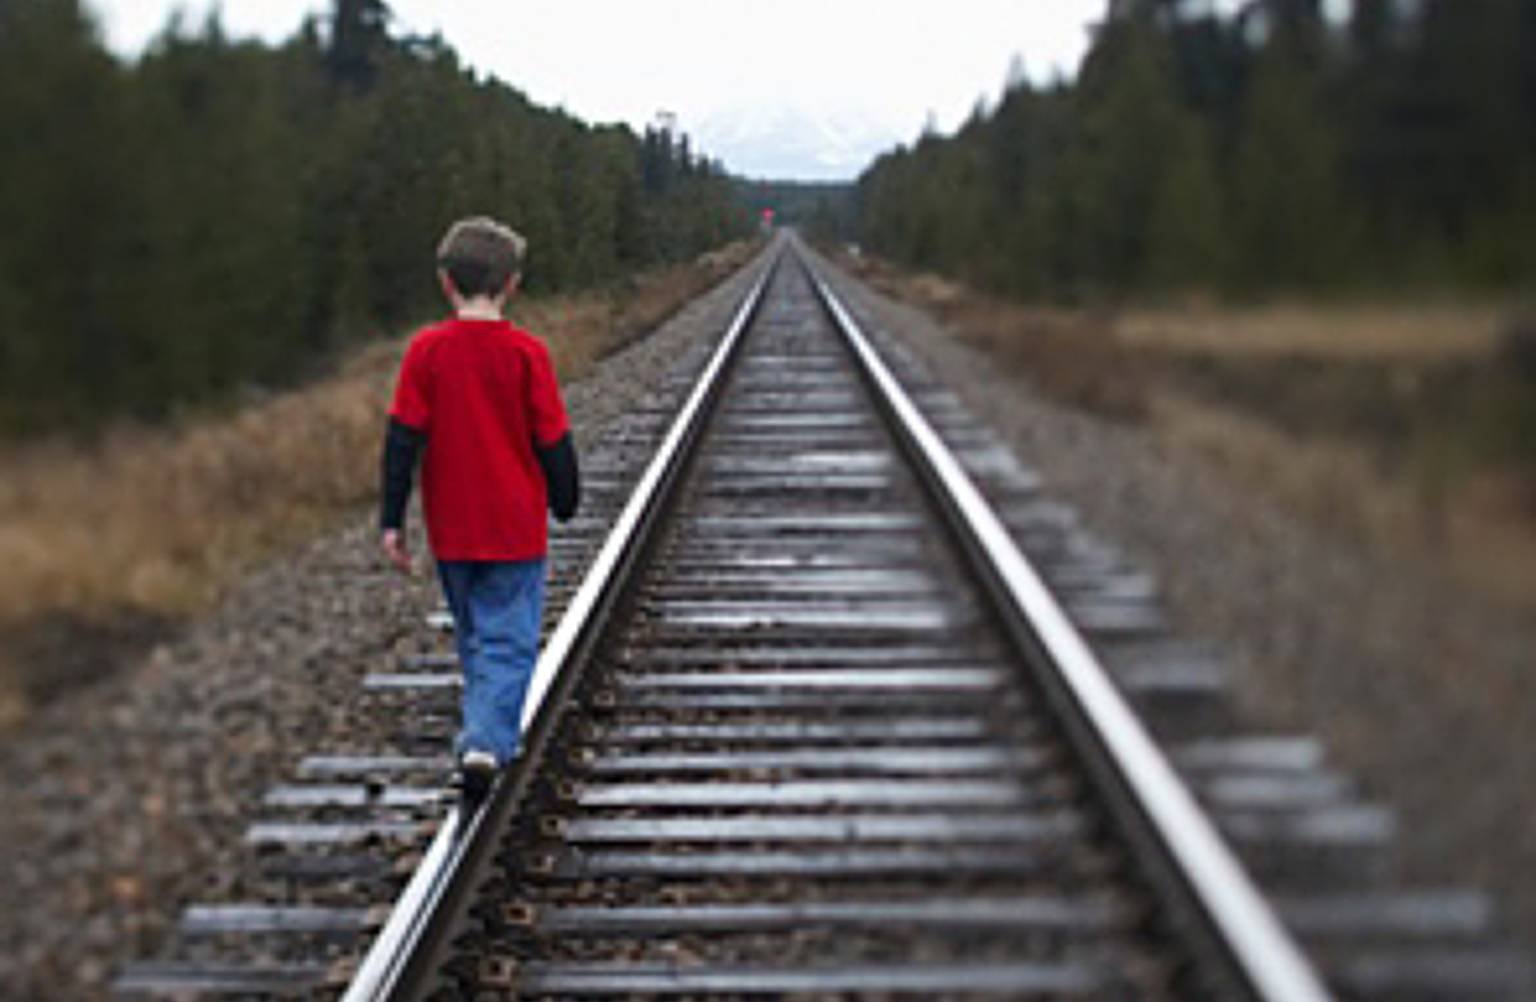 Лайфхак от железнодорожников: приложение «Берегись поезда» предупредит брянских родителей, что ребенок в опасной зоне